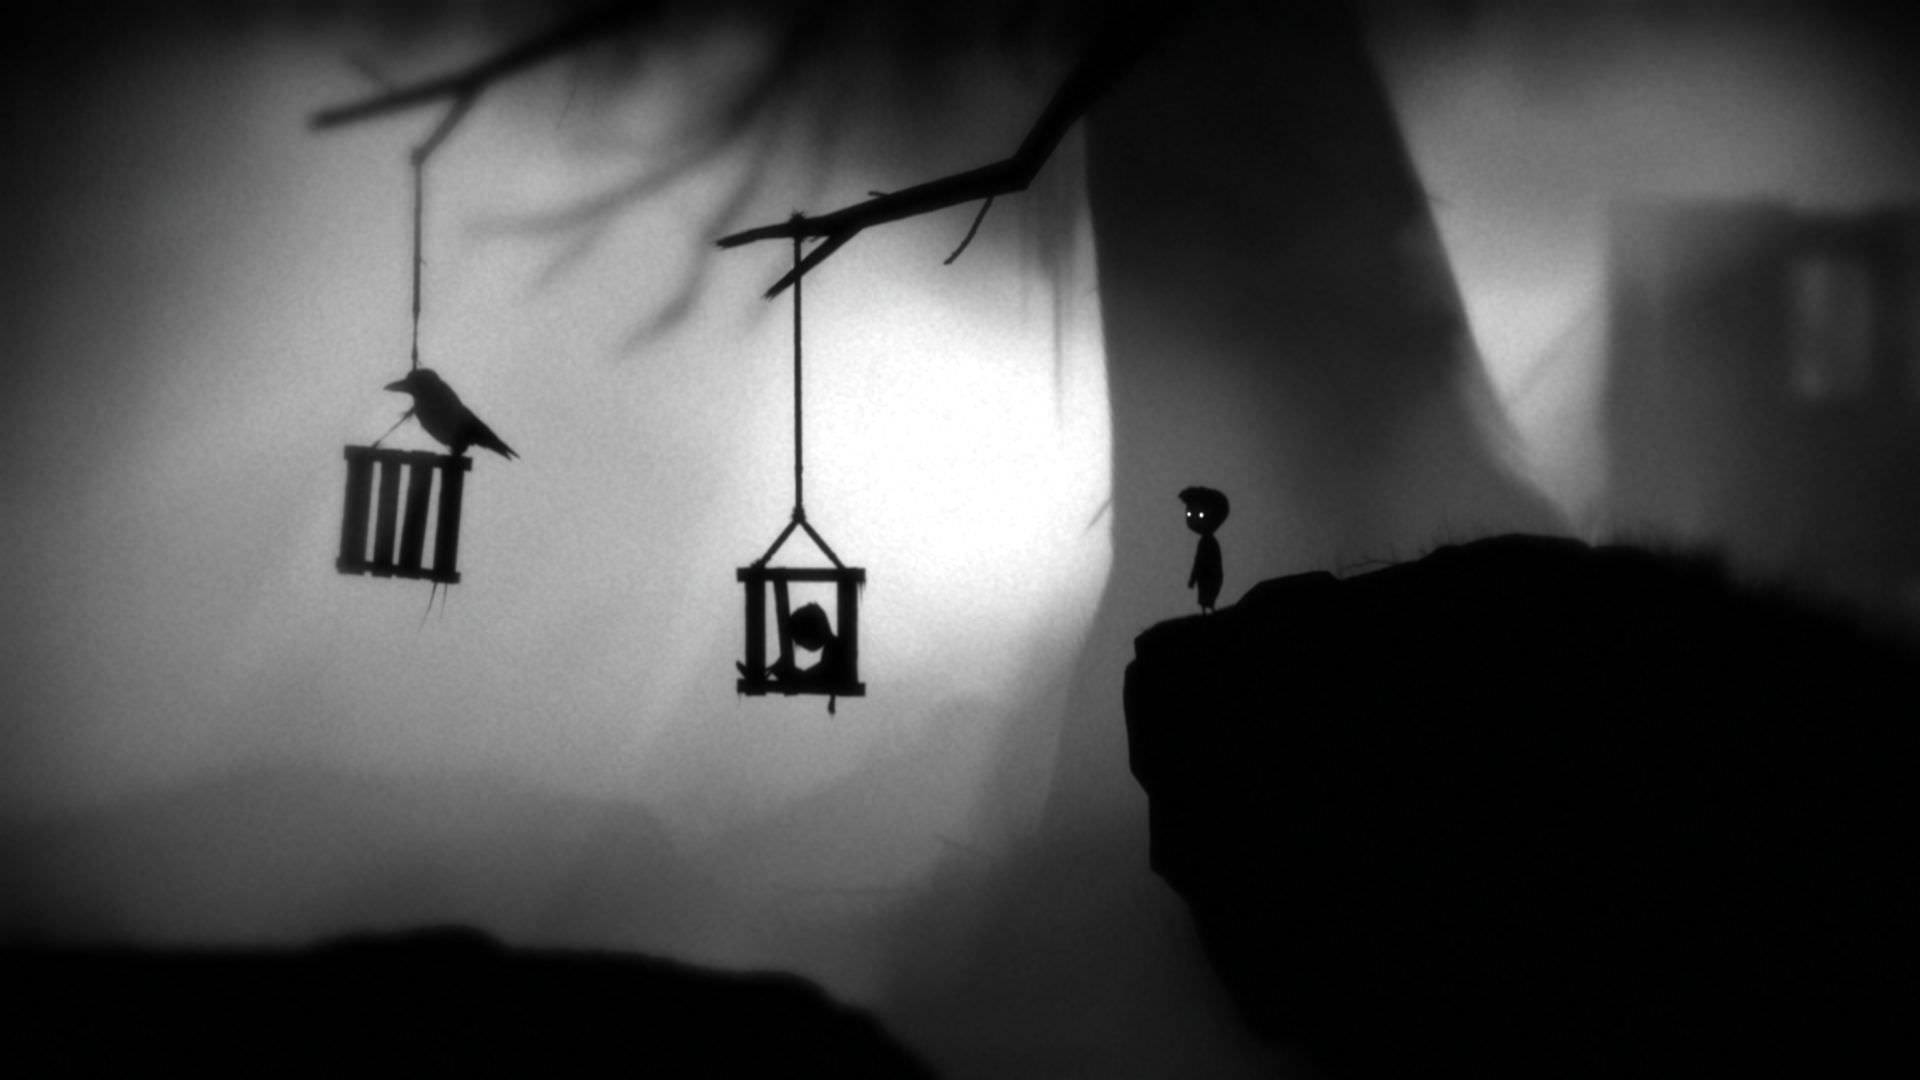 بازی سیاه سفید limbo  پسر بچه در فضای ترسناک دره و درخت با نمایش یک اسیر در قفس و کلاغ سیاه 